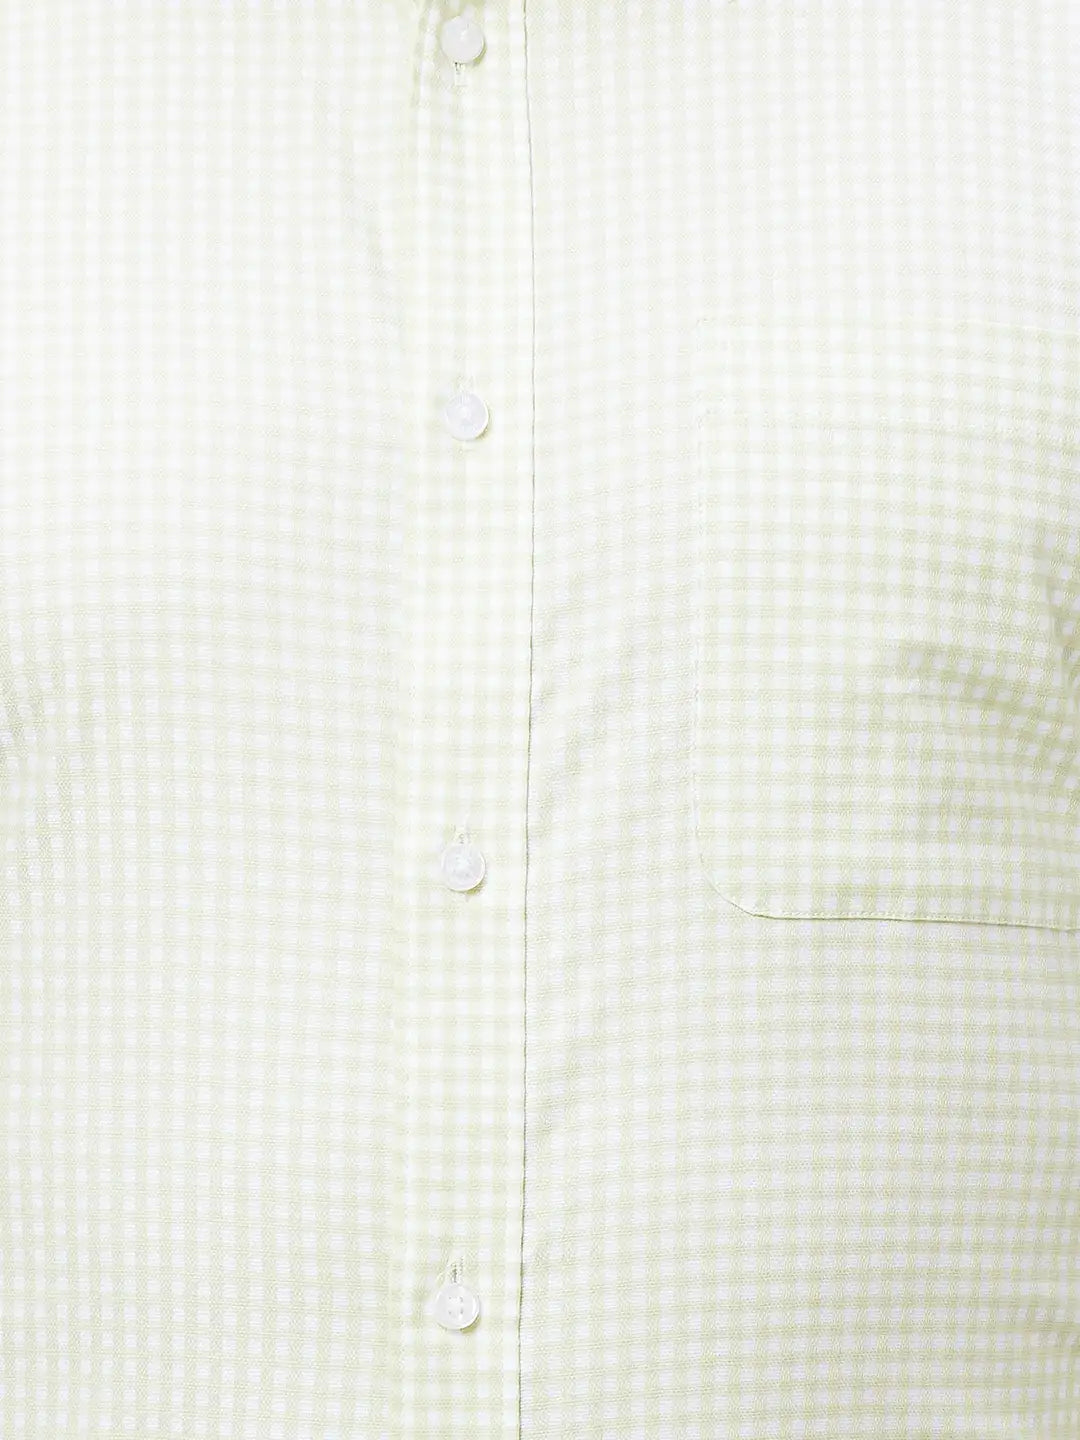 Raymond Men Blue Structure Slim Fit Cotton Shirt